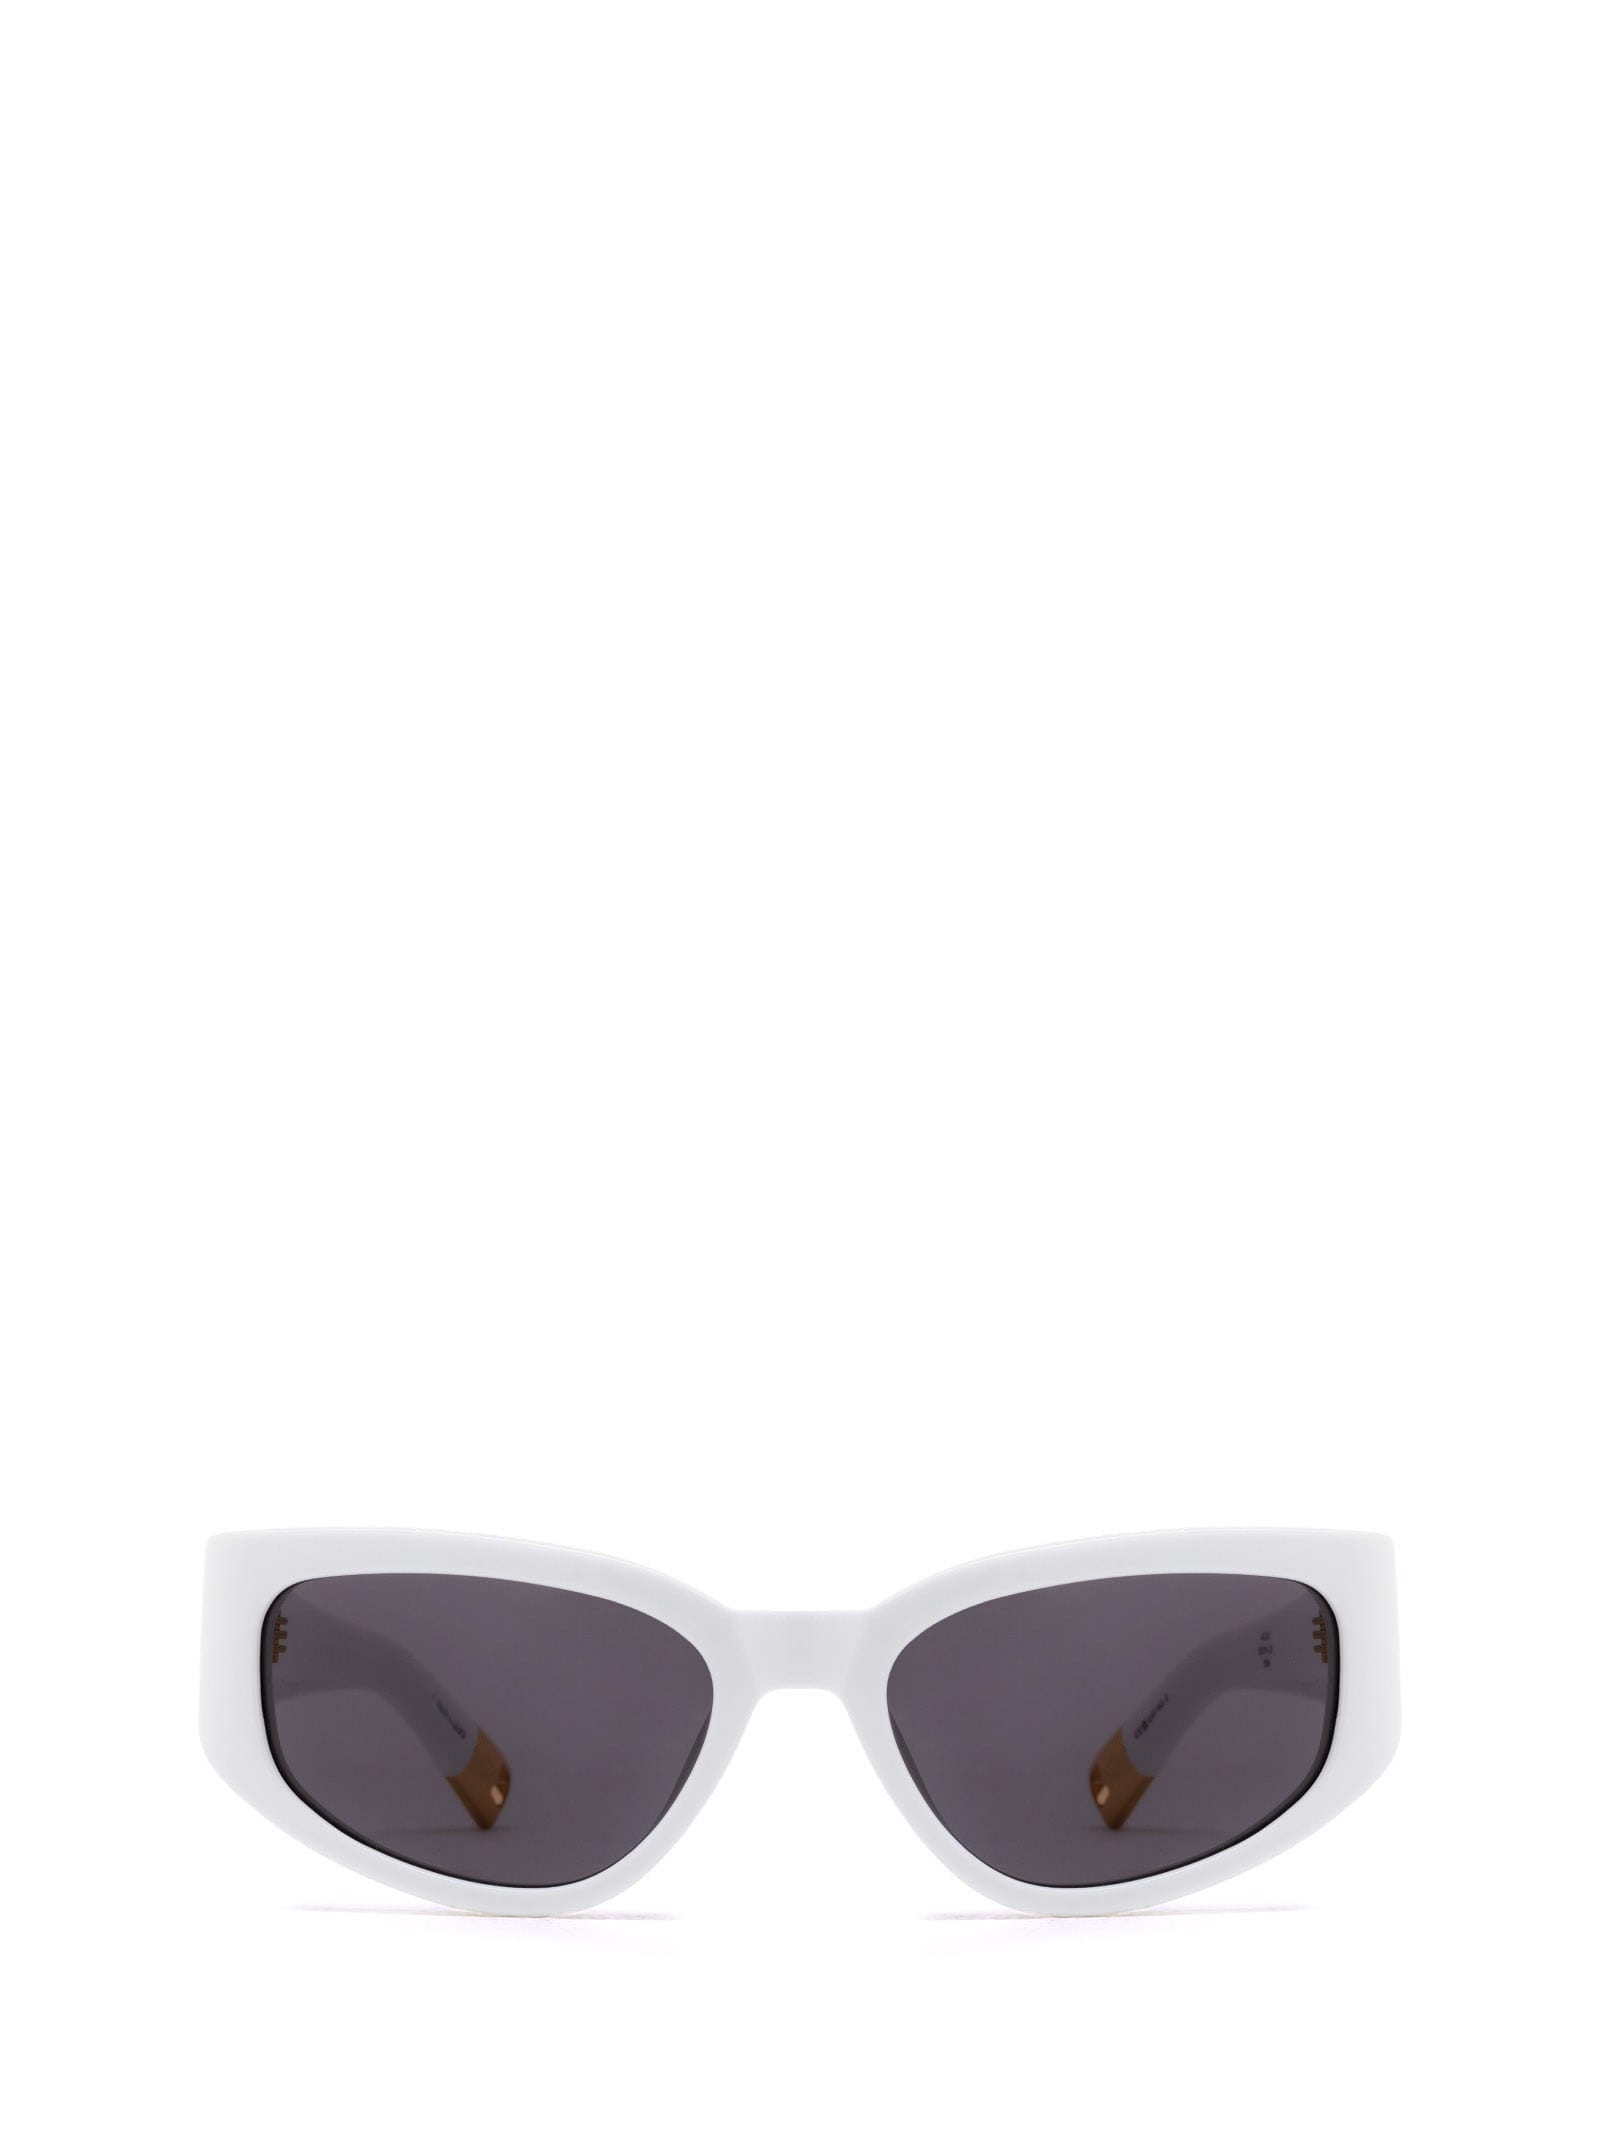 Jac5 White Sunglasses